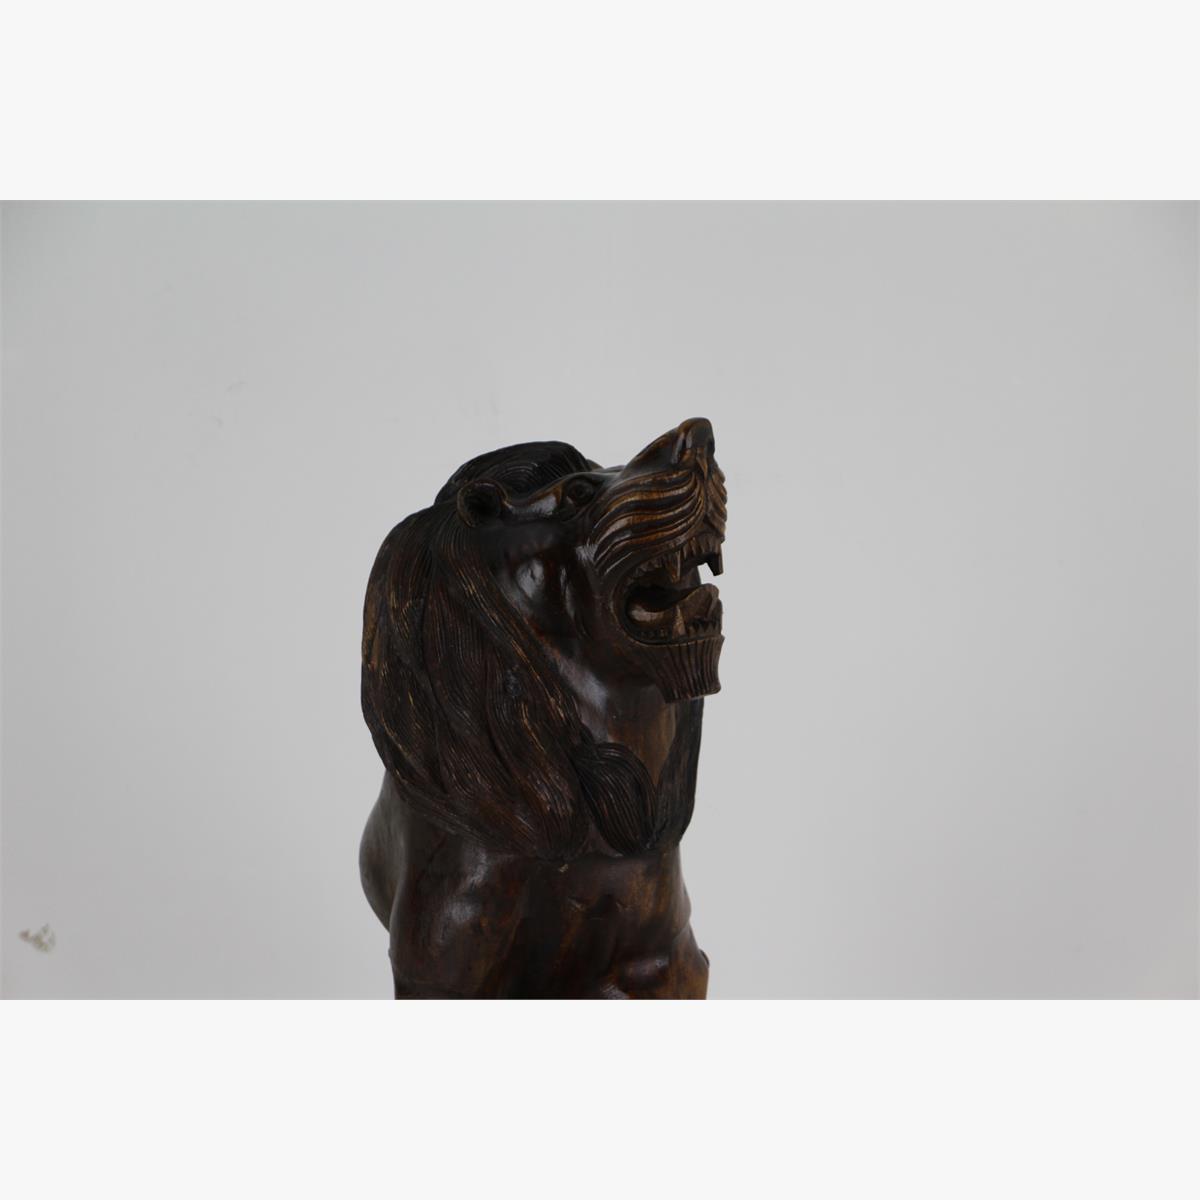 Afbeeldingen van houten beeld leeuw